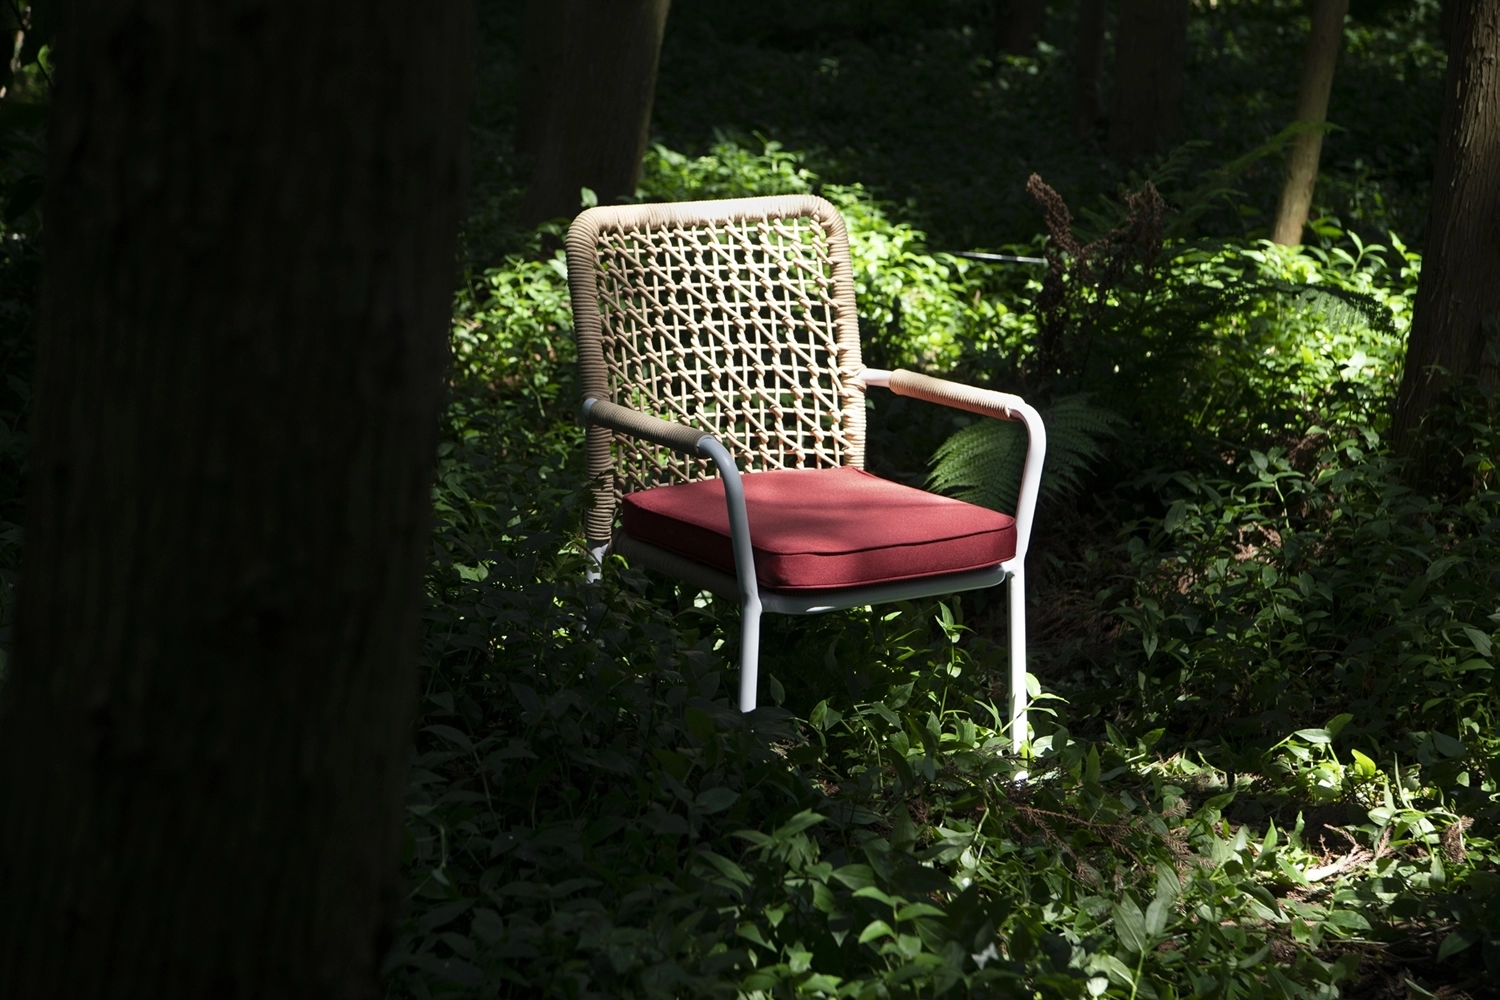 CW57 ガーデンチェア / Garden Chair